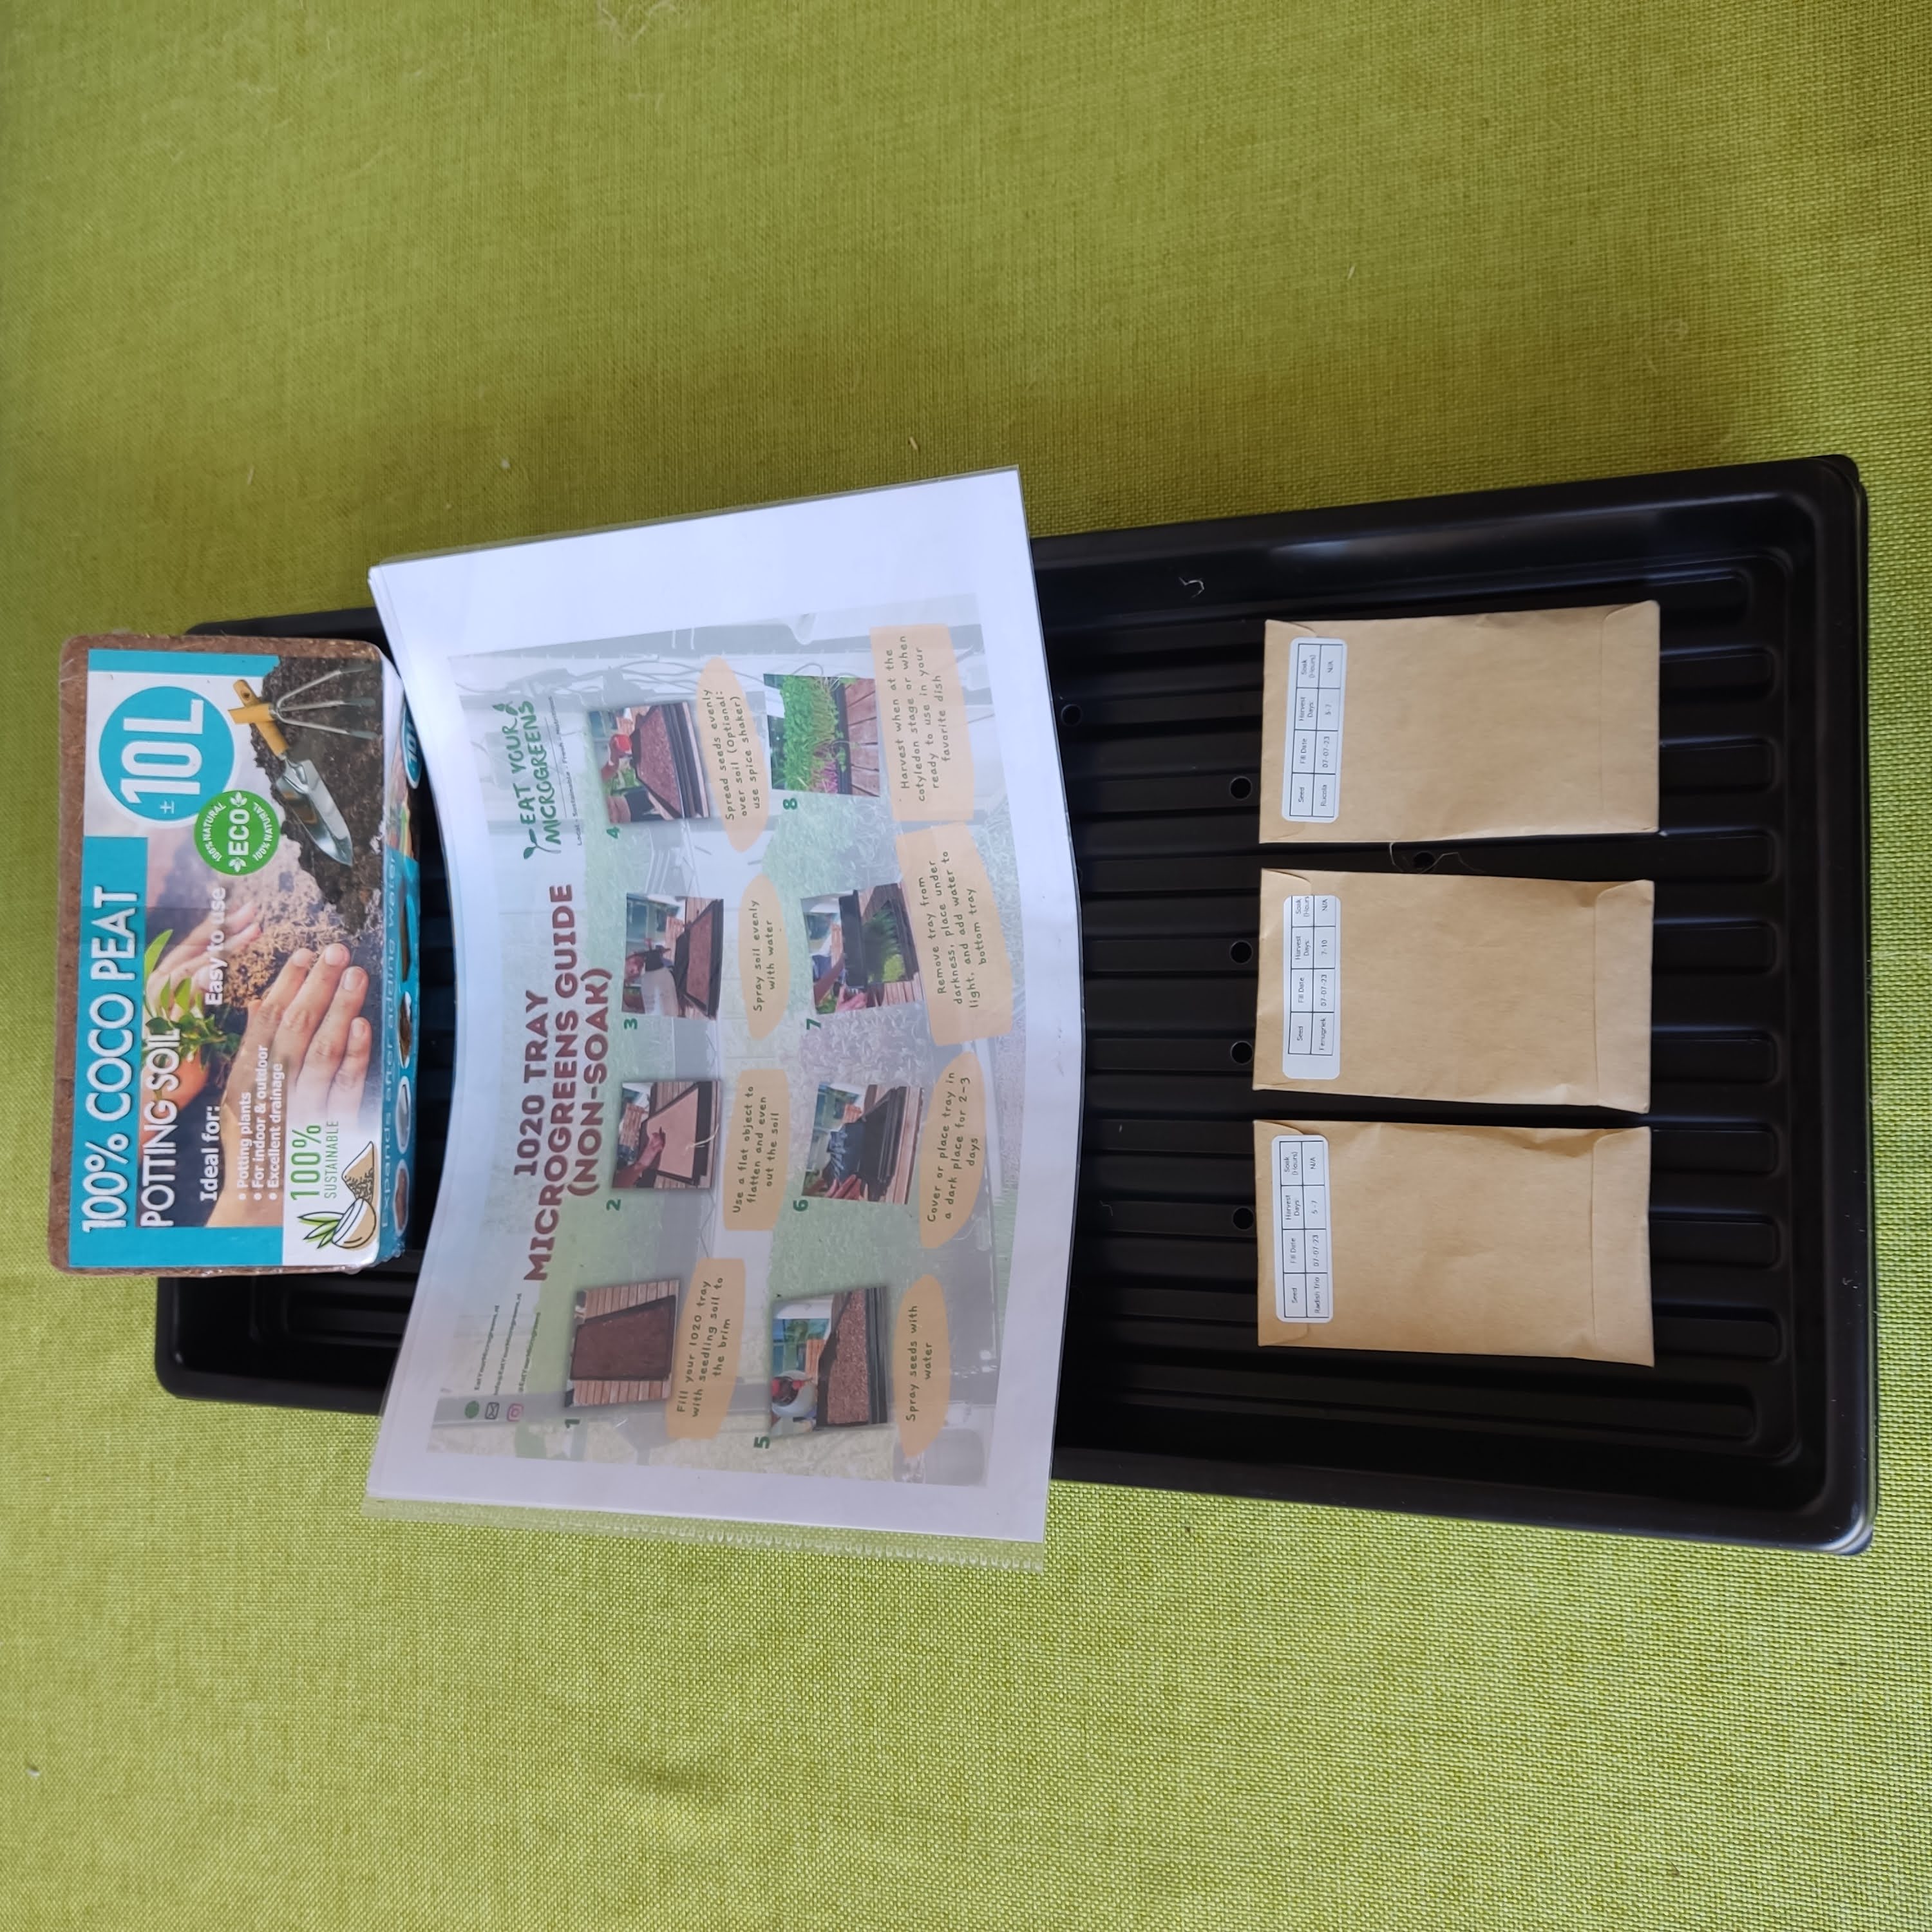 1020 Microgreen-Tablett-Set (2 Tabletts + Kuppel + Samen + Erde/Hanf/Kokos + Anleitung)